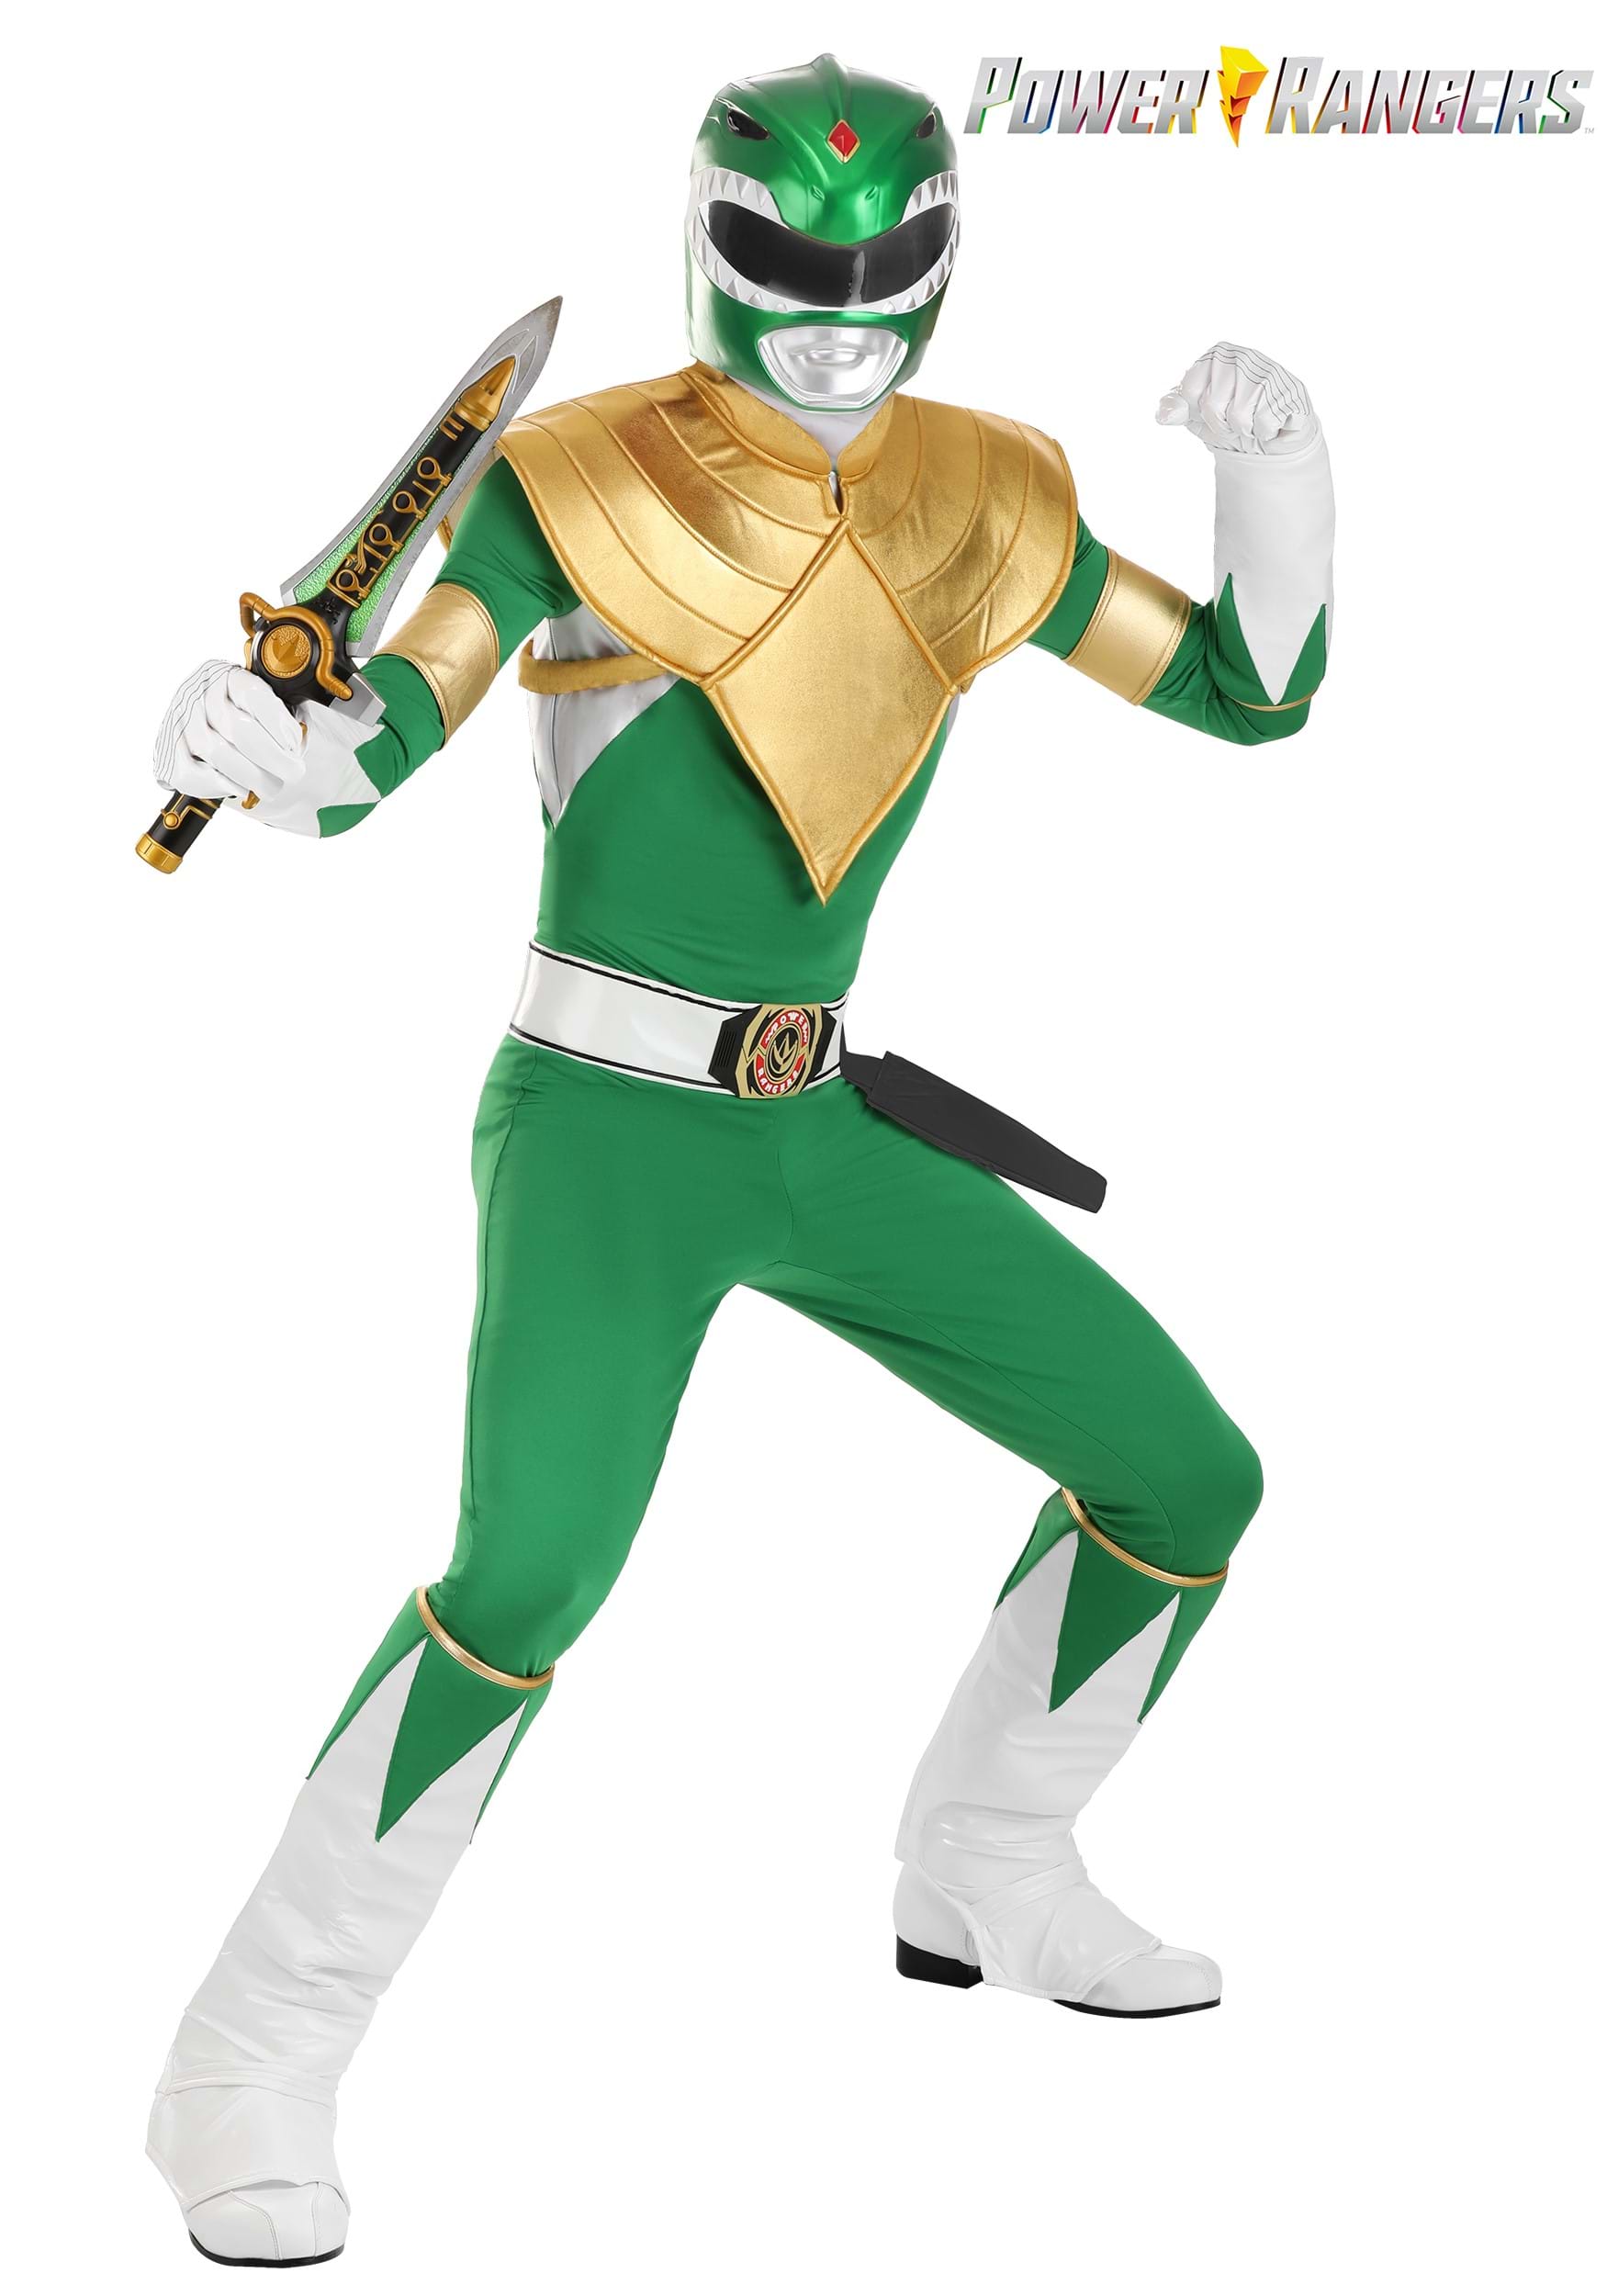 Power Rangers Anime  Power rangers, Power rangers costume, Ranger